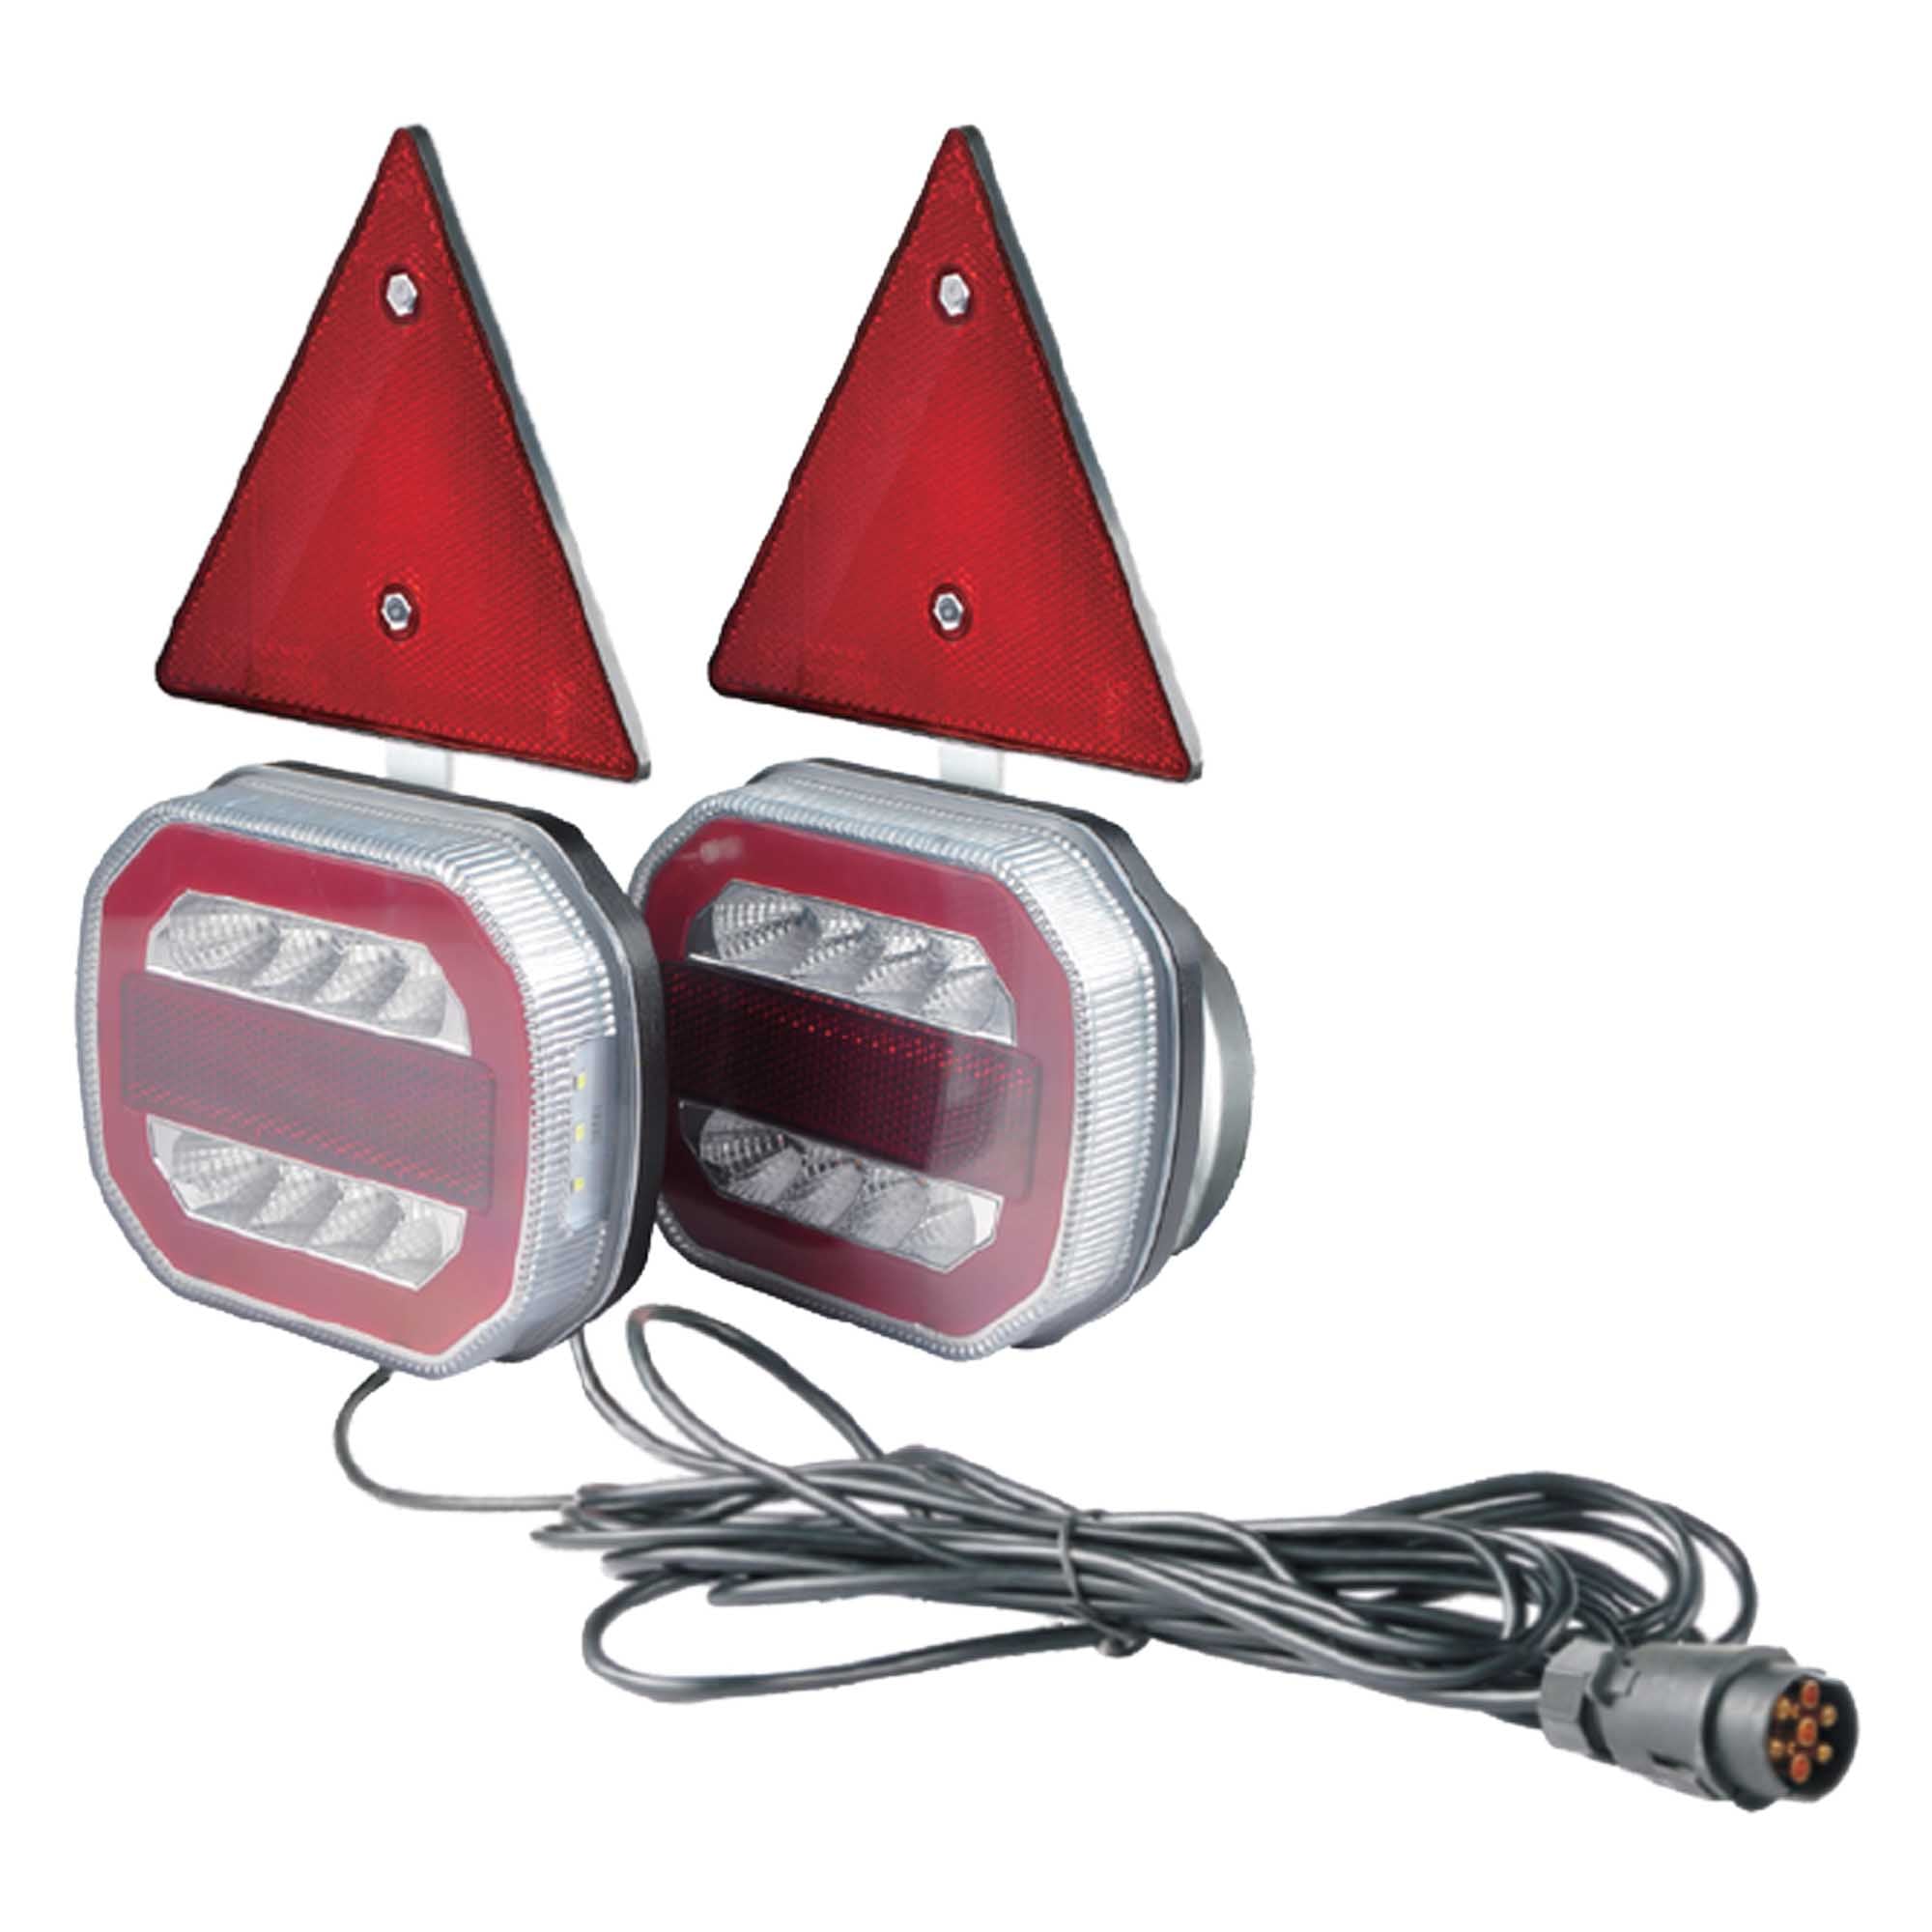 LED Rückleuchte mit Magneten Anhängerbeleuchtung 7-pol 12V E11